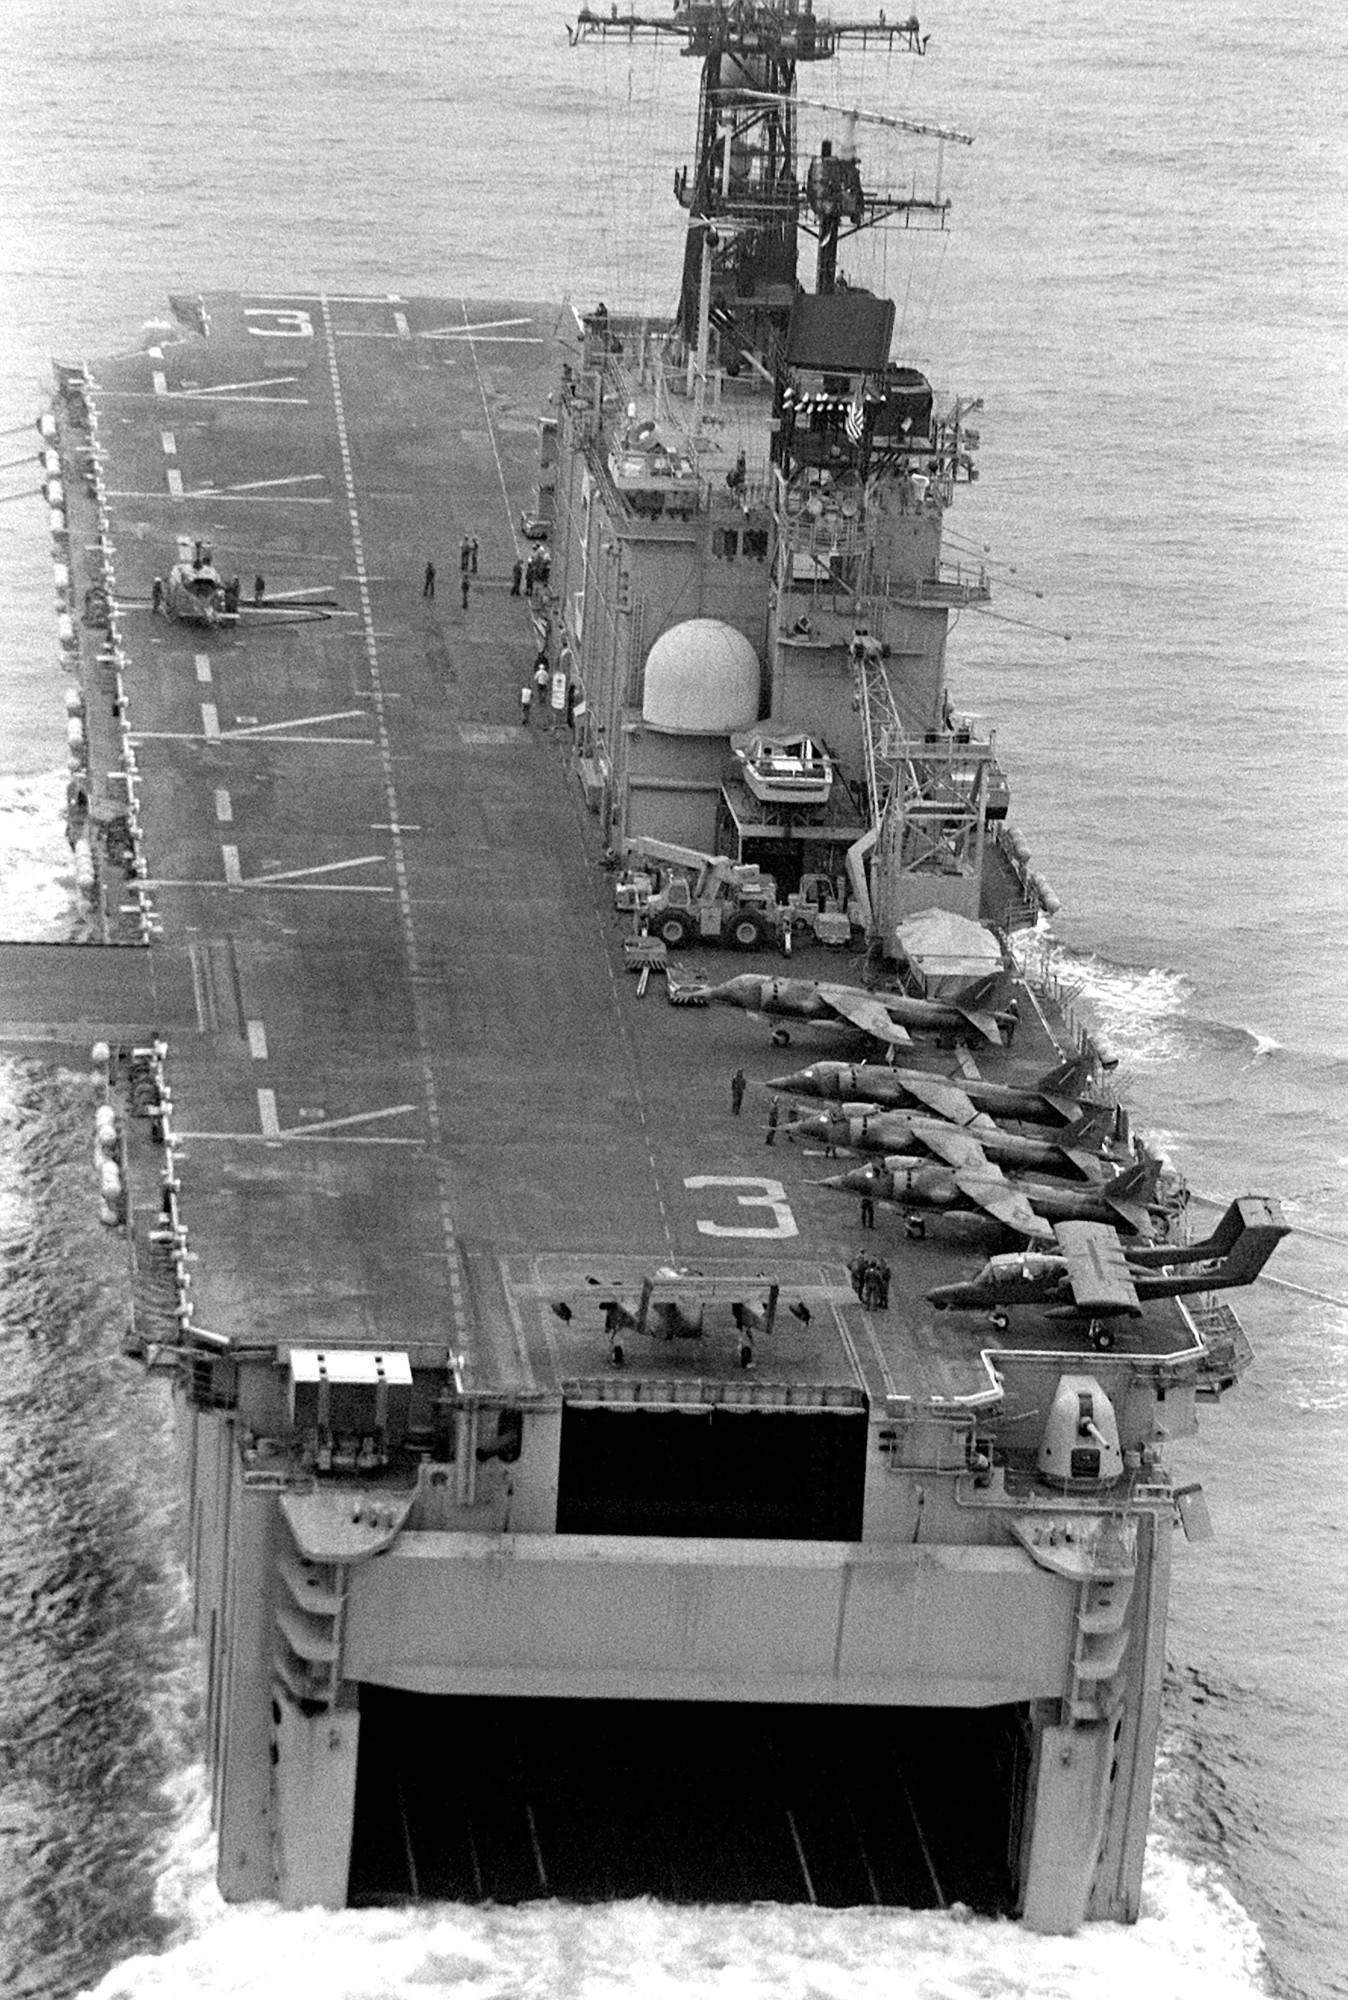 lha-3 uss belleau wood tarawa class amphibious assault ship us navy 13 hmm-262